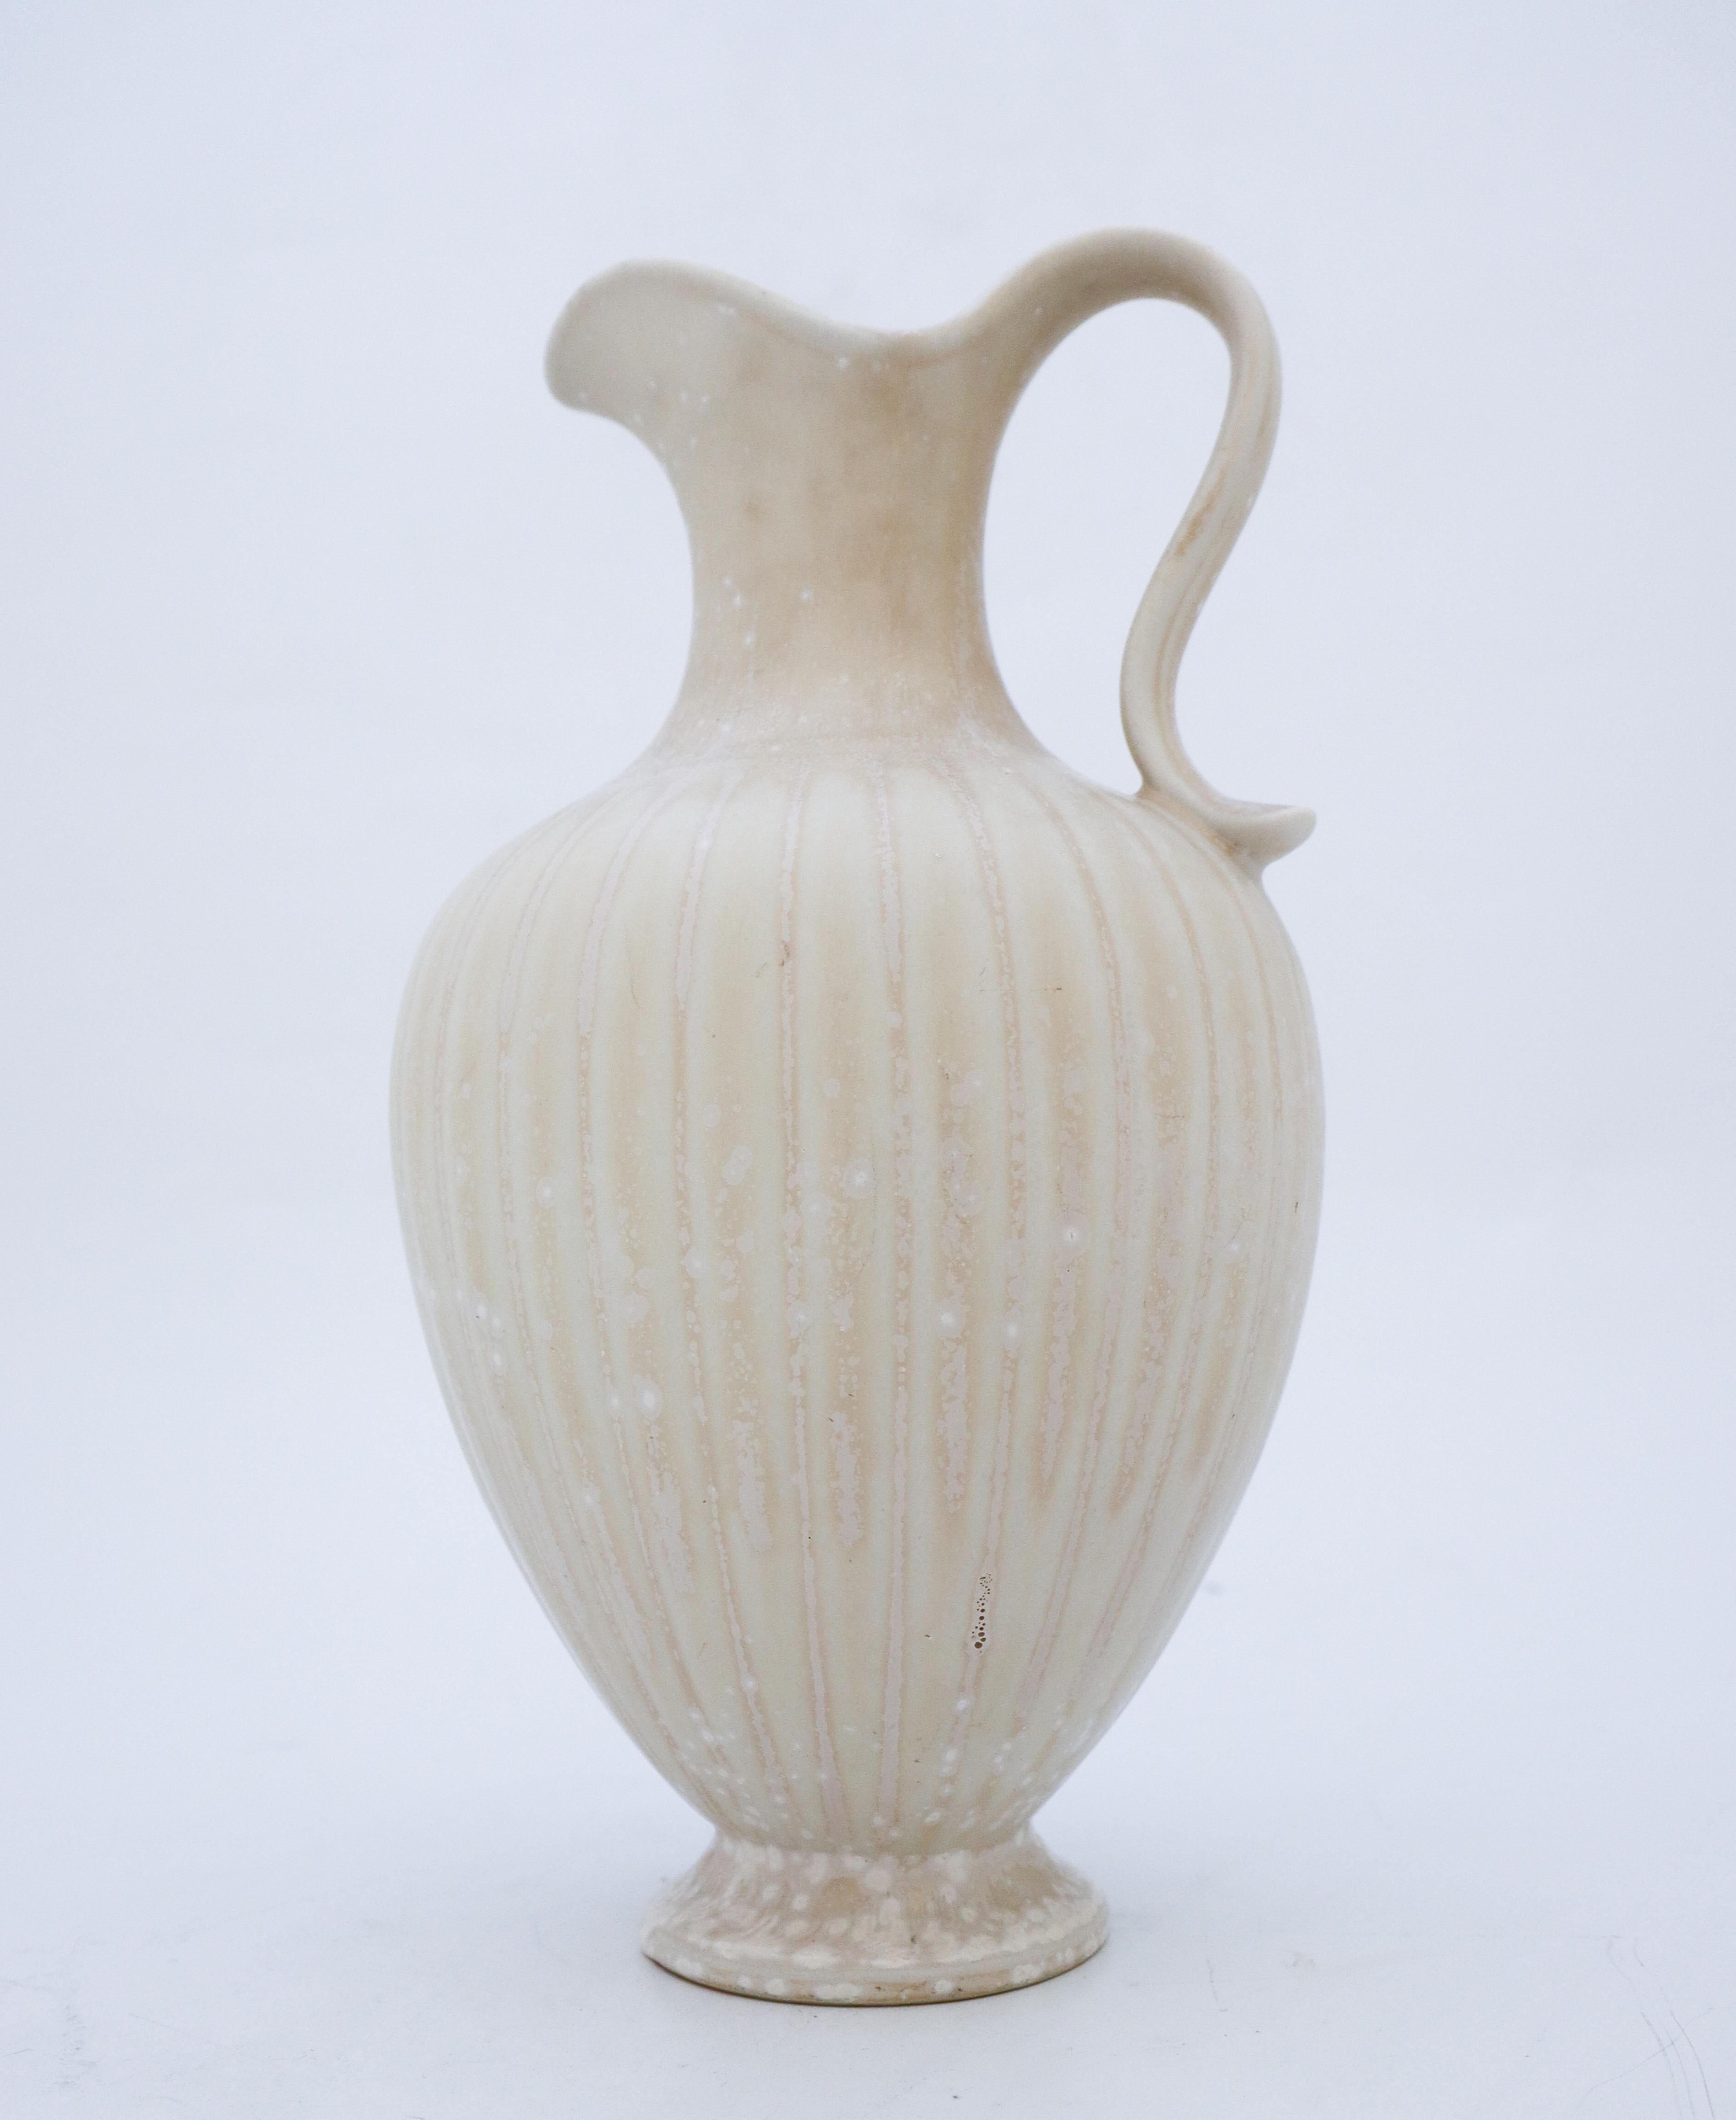 Eine weiß gesprenkelte Vase, entworfen von Gunnar Nylund bei Rörstrand. Die Vase ist 28,5 cm hoch und in sehr gutem Zustand, abgesehen von einigen kleinen Kratzern. Die Vase ist als 1. Qualität gekennzeichnet.